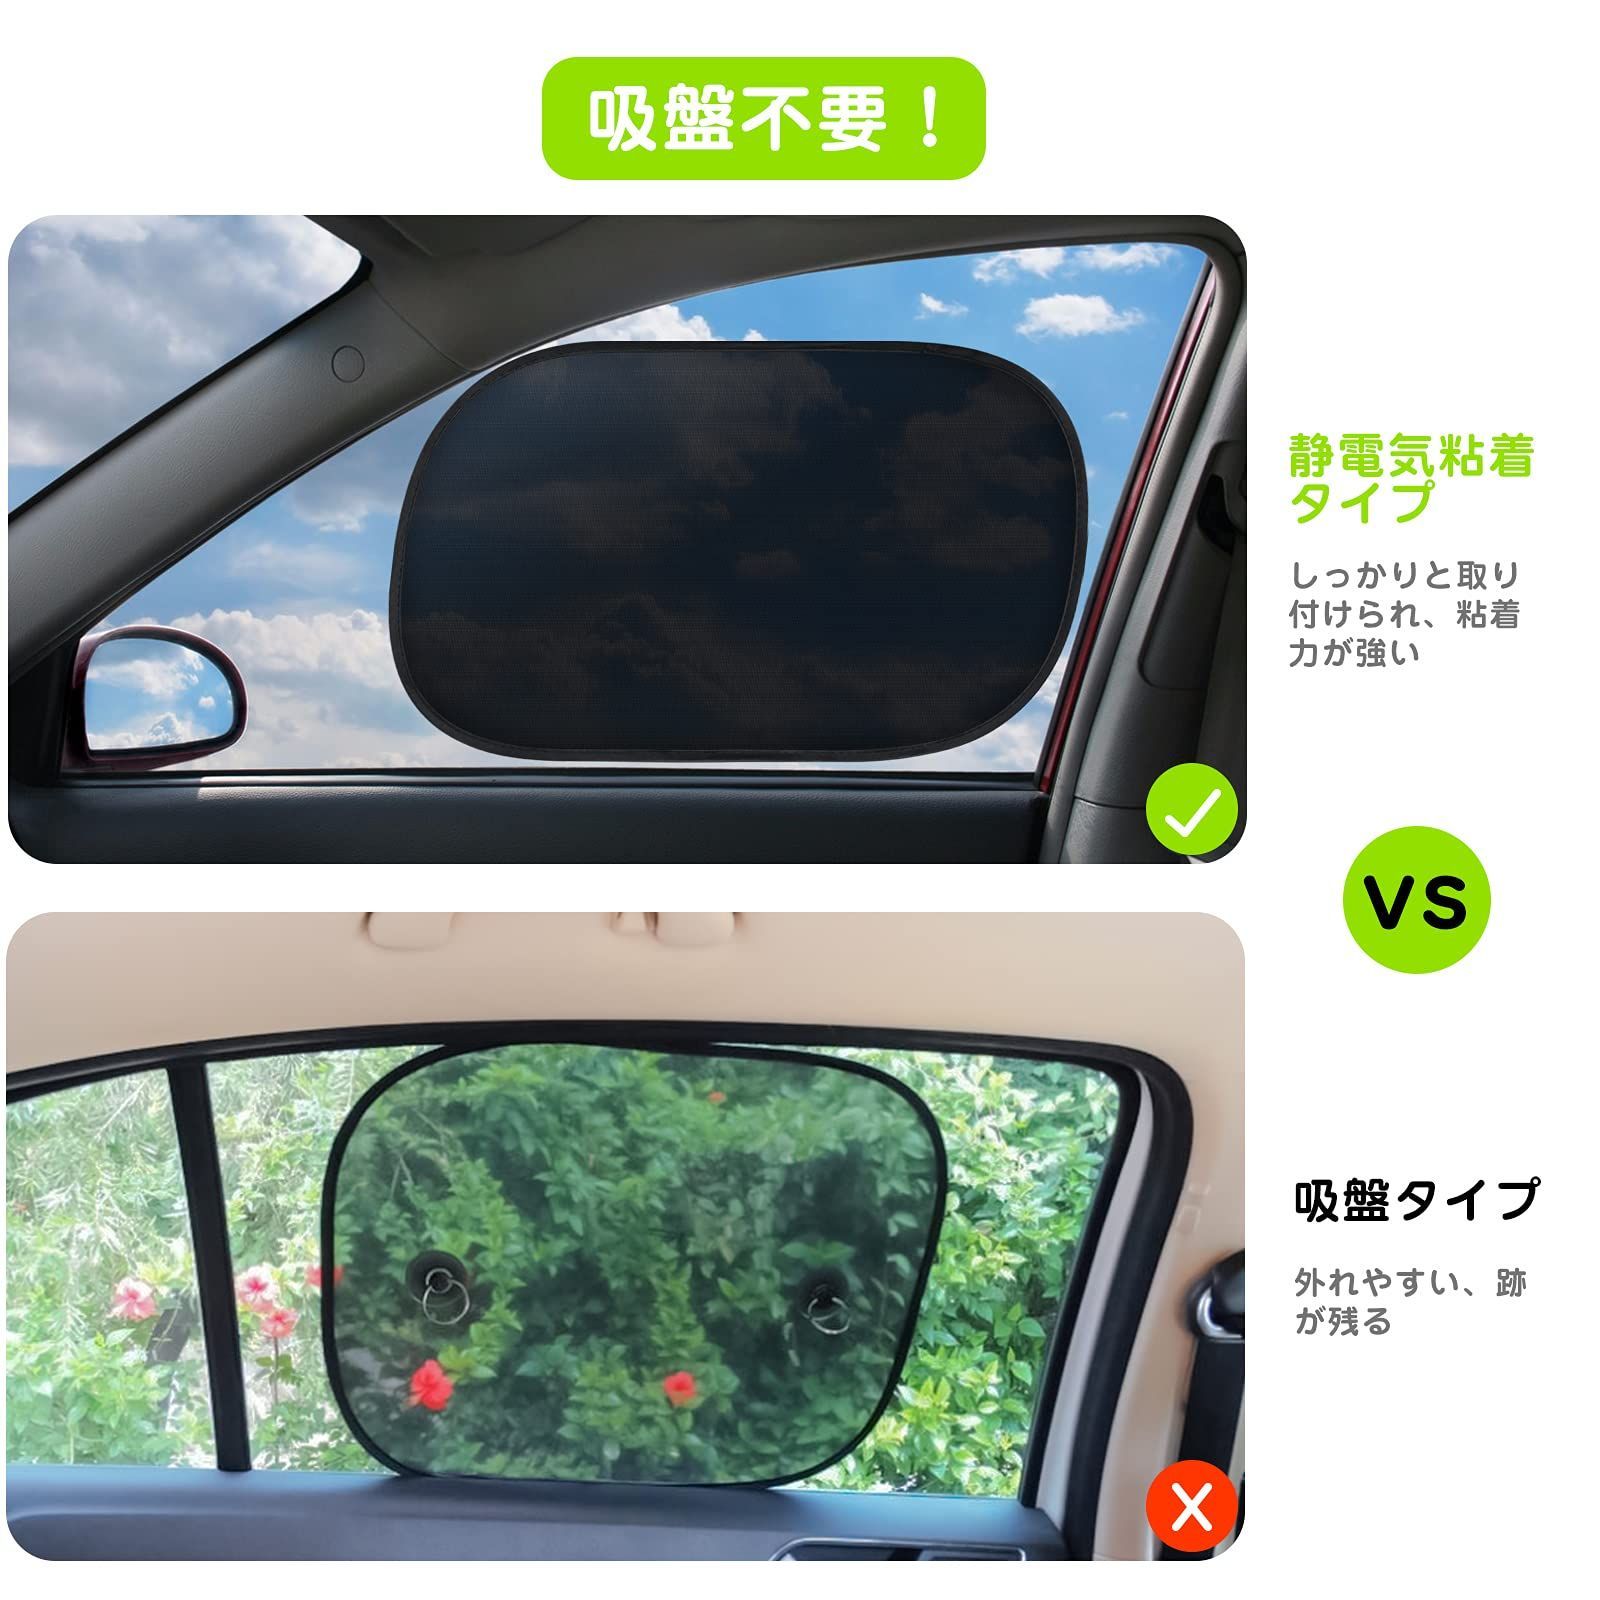 日本全国 送料無料 サンシェード 車 ウインドウサンシェイド 伸縮 遮光 断熱 UVカット 取り外し簡単 吸盤 カーテン 日よけ